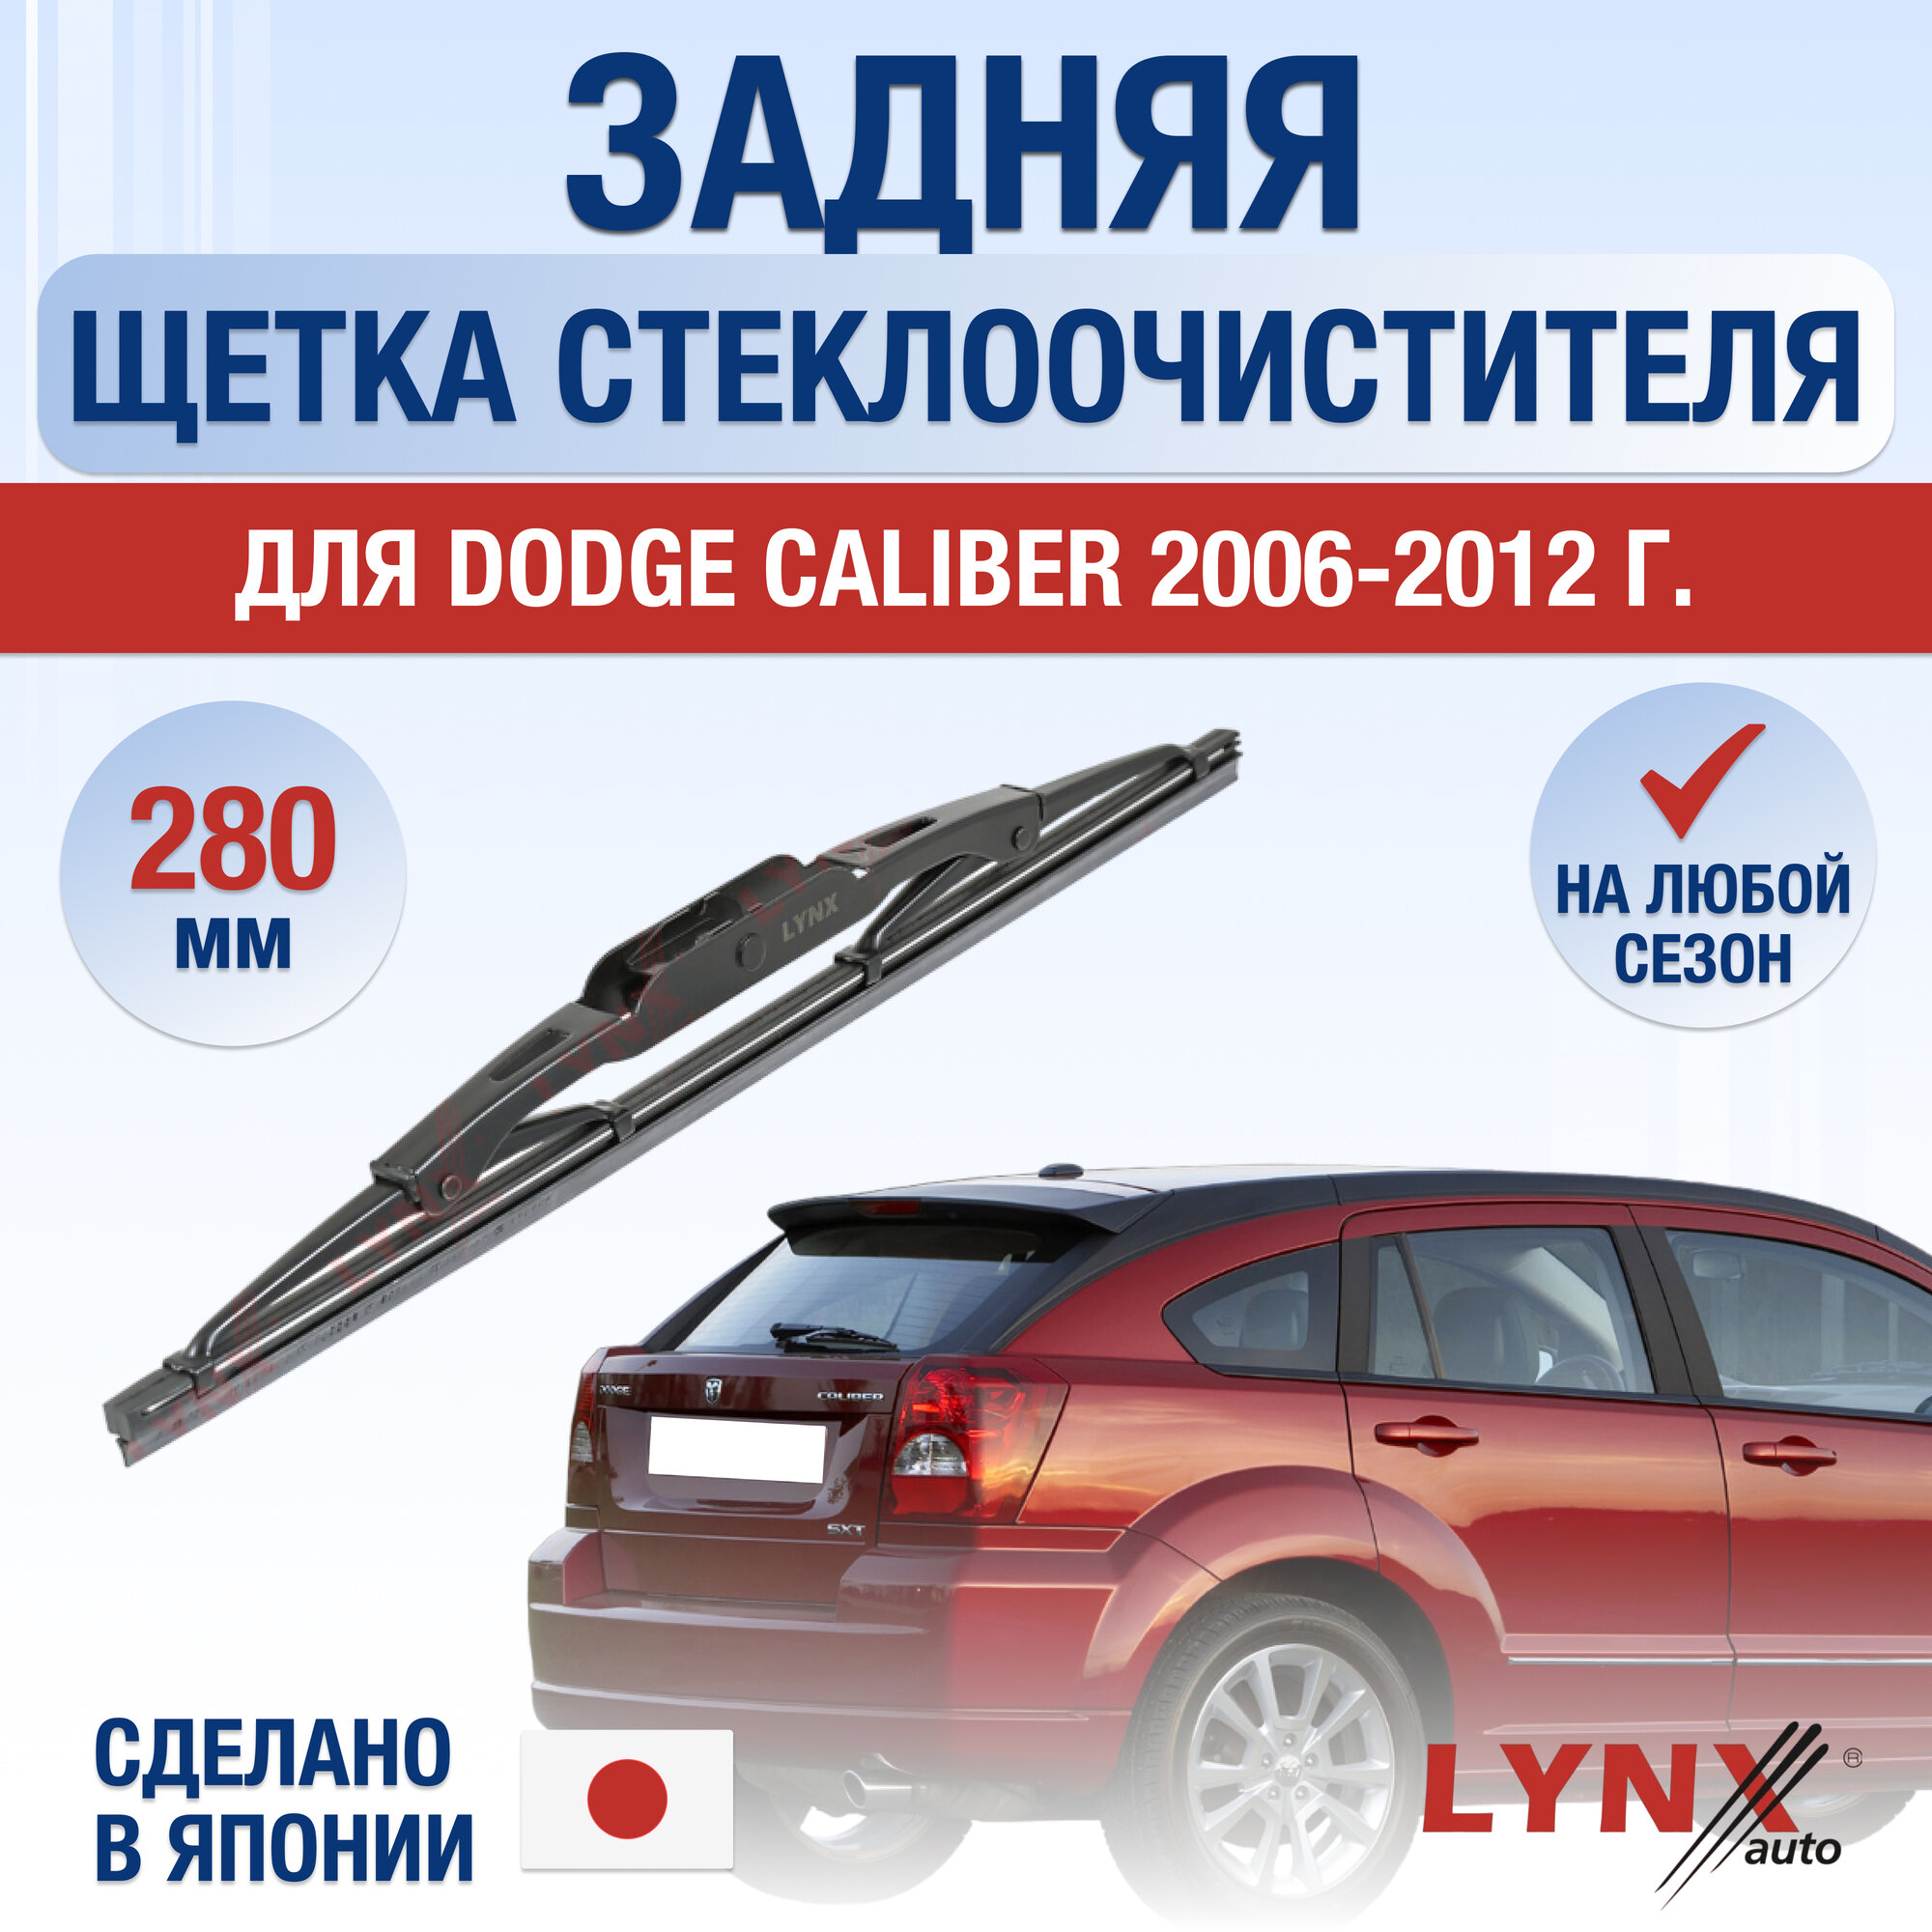 Задняя щетка стеклоочистителя для Dodge Caliber / 2006 2007 2008 2009 2010 2011 2012 / Задний дворник 280 мм Додж Калибер